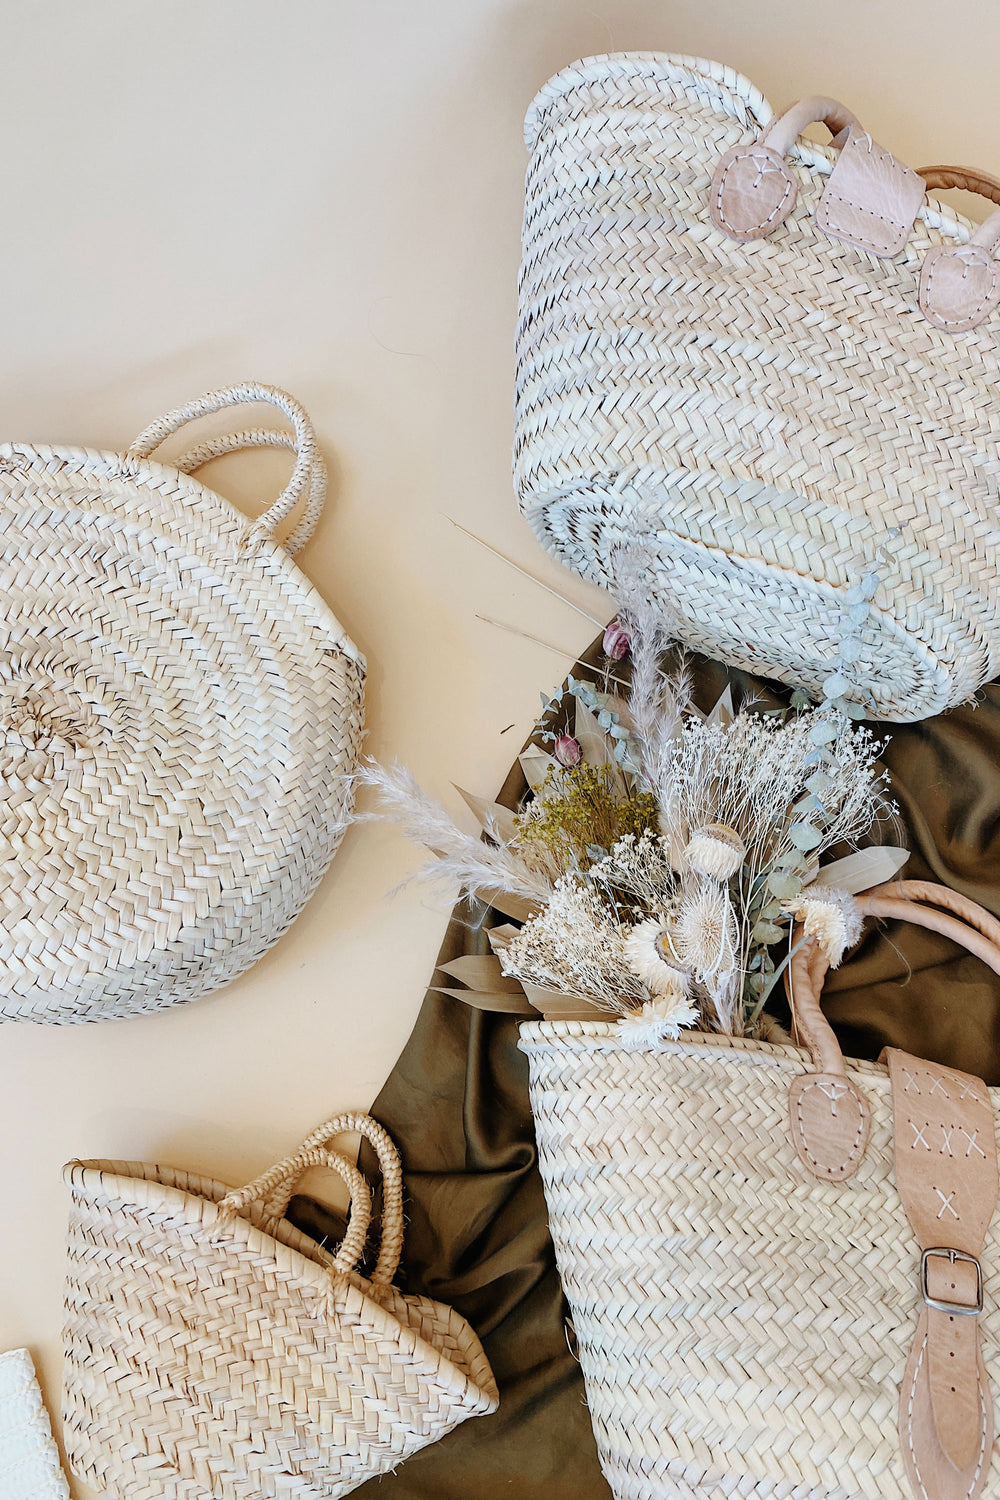 Straw French Basket / Summer Bag / Straw Beach Bag / Shopping 